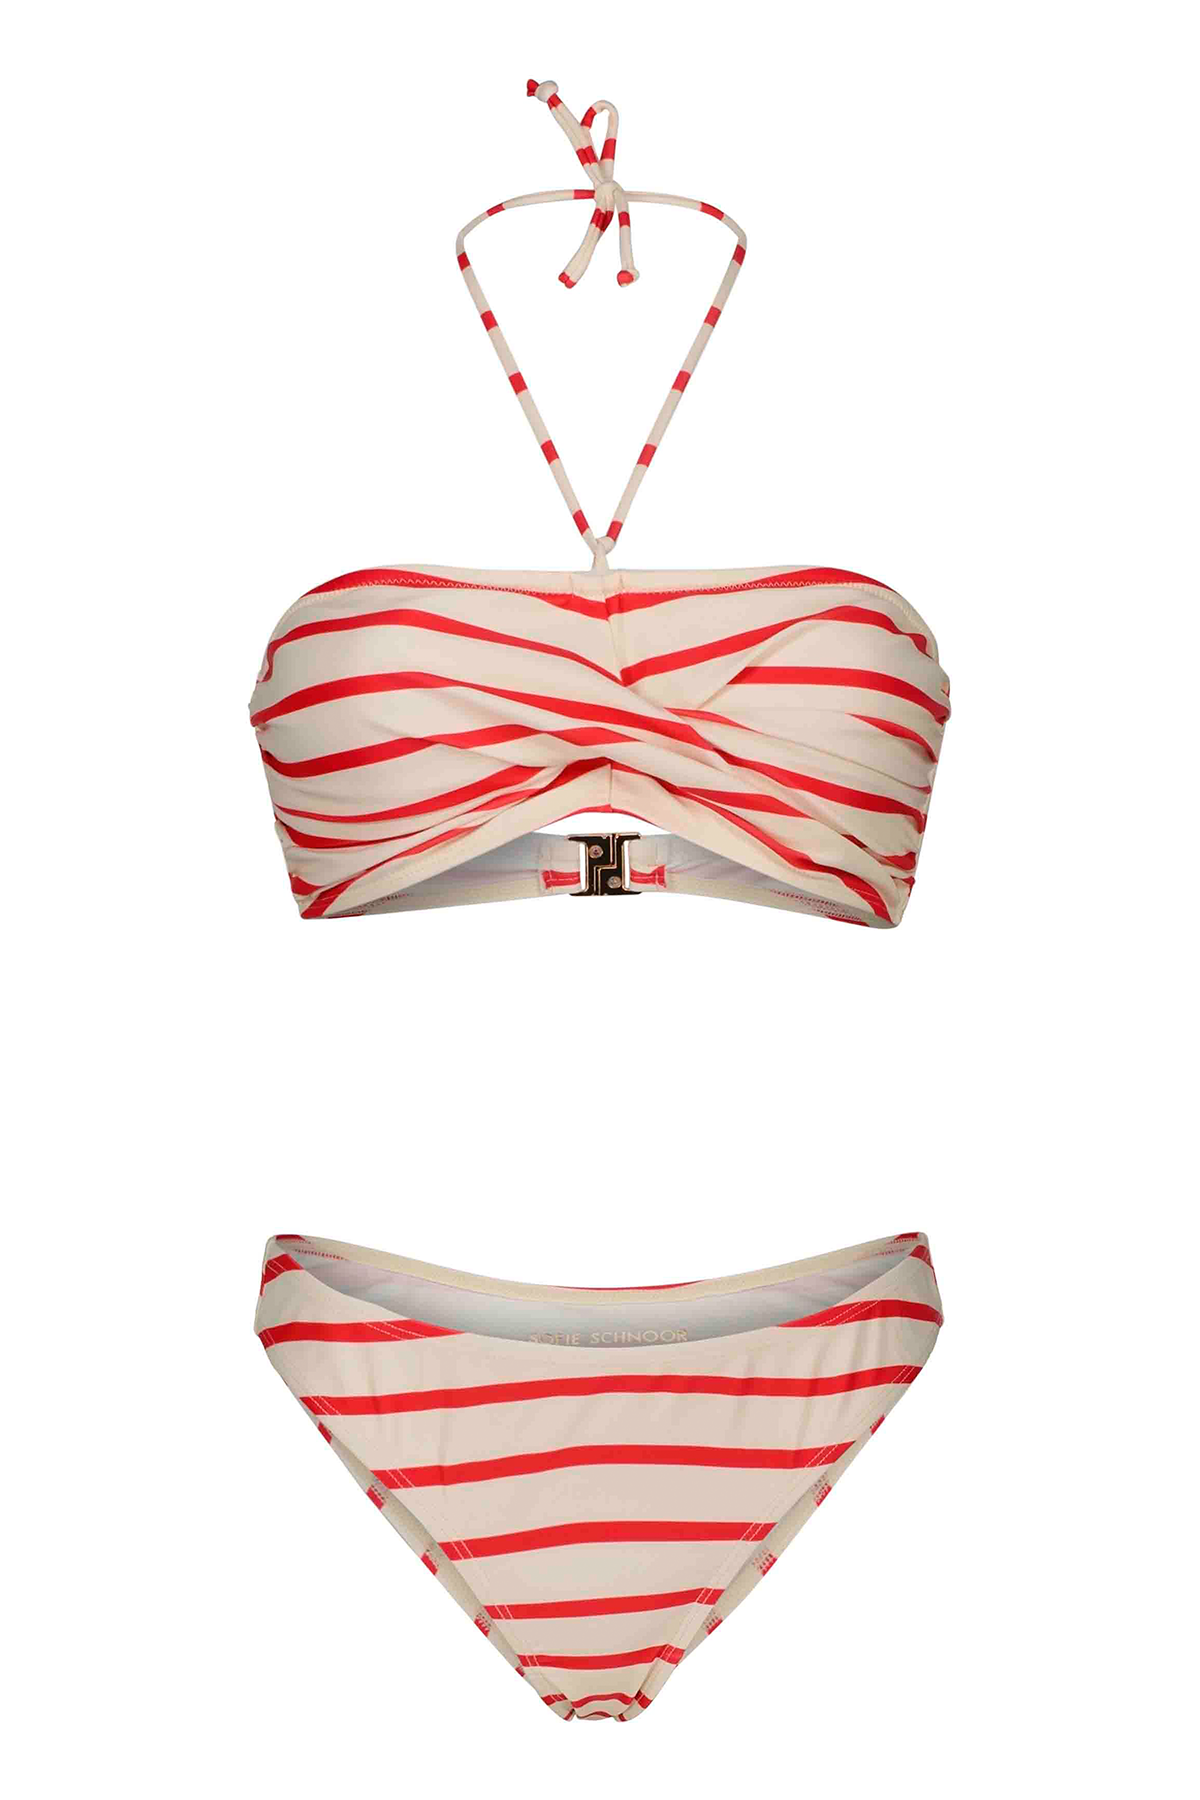 Sofie Schnoor Rosie Bikini Sæt S, Farve: Rød Striped, Størrelse: L, Dame